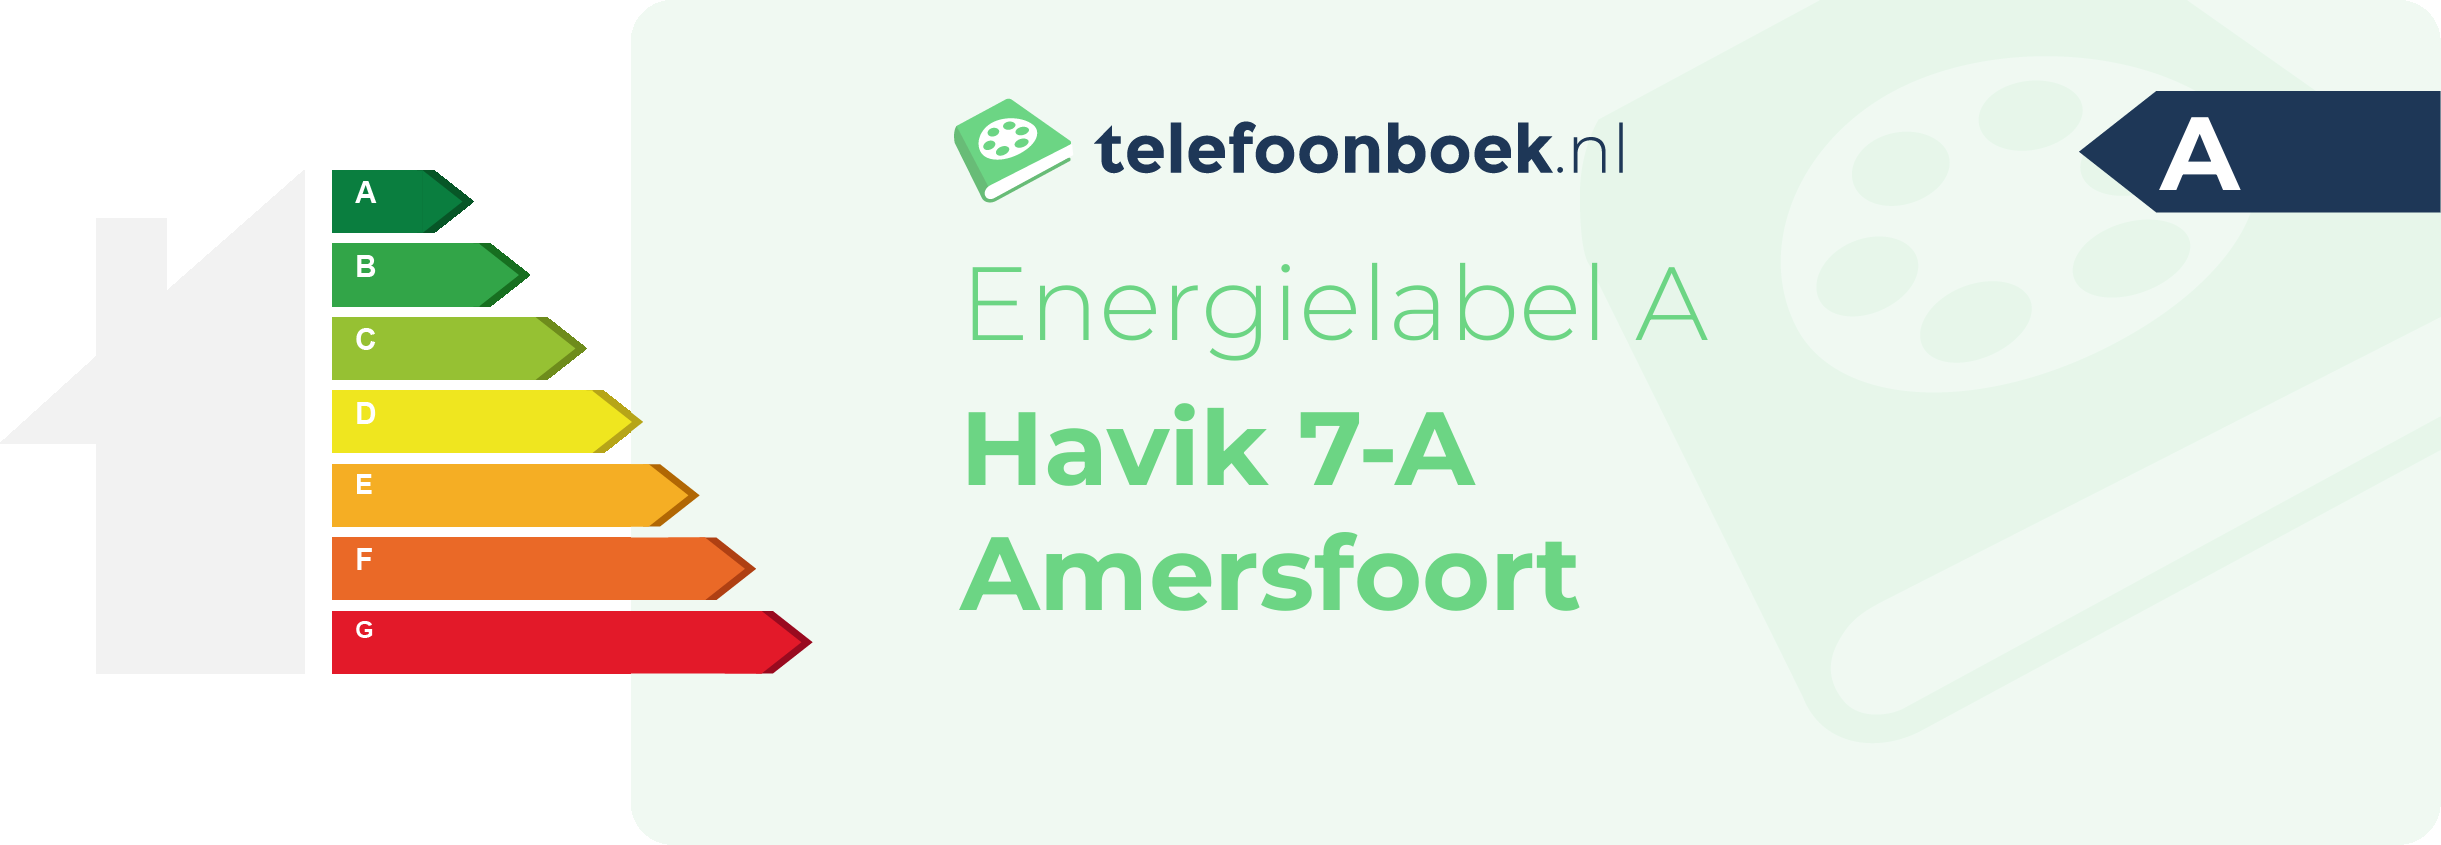 Energielabel Havik 7-A Amersfoort